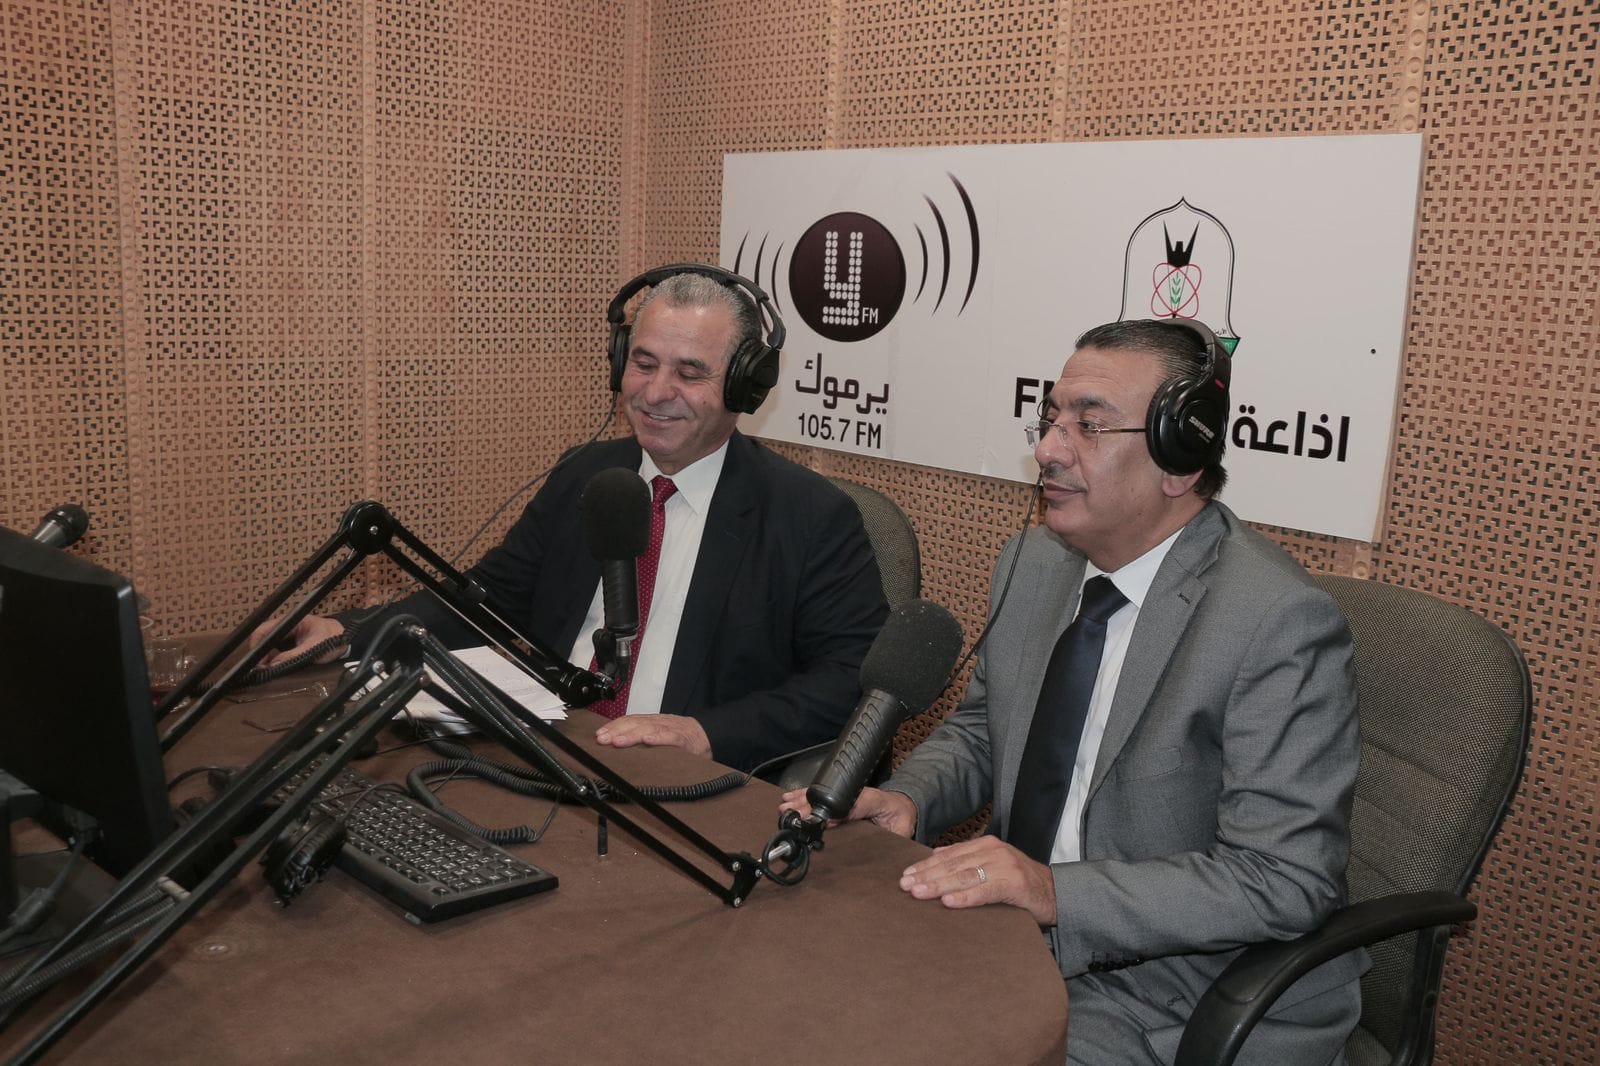 إذاعة جامعة اليرموك في كلية الإعلام، تُطلق عبر أثيرها، برنامجا مفتوحا يتناول زيارة جلالة الملك عبدالله الثاني، إلى محافظة إربد.